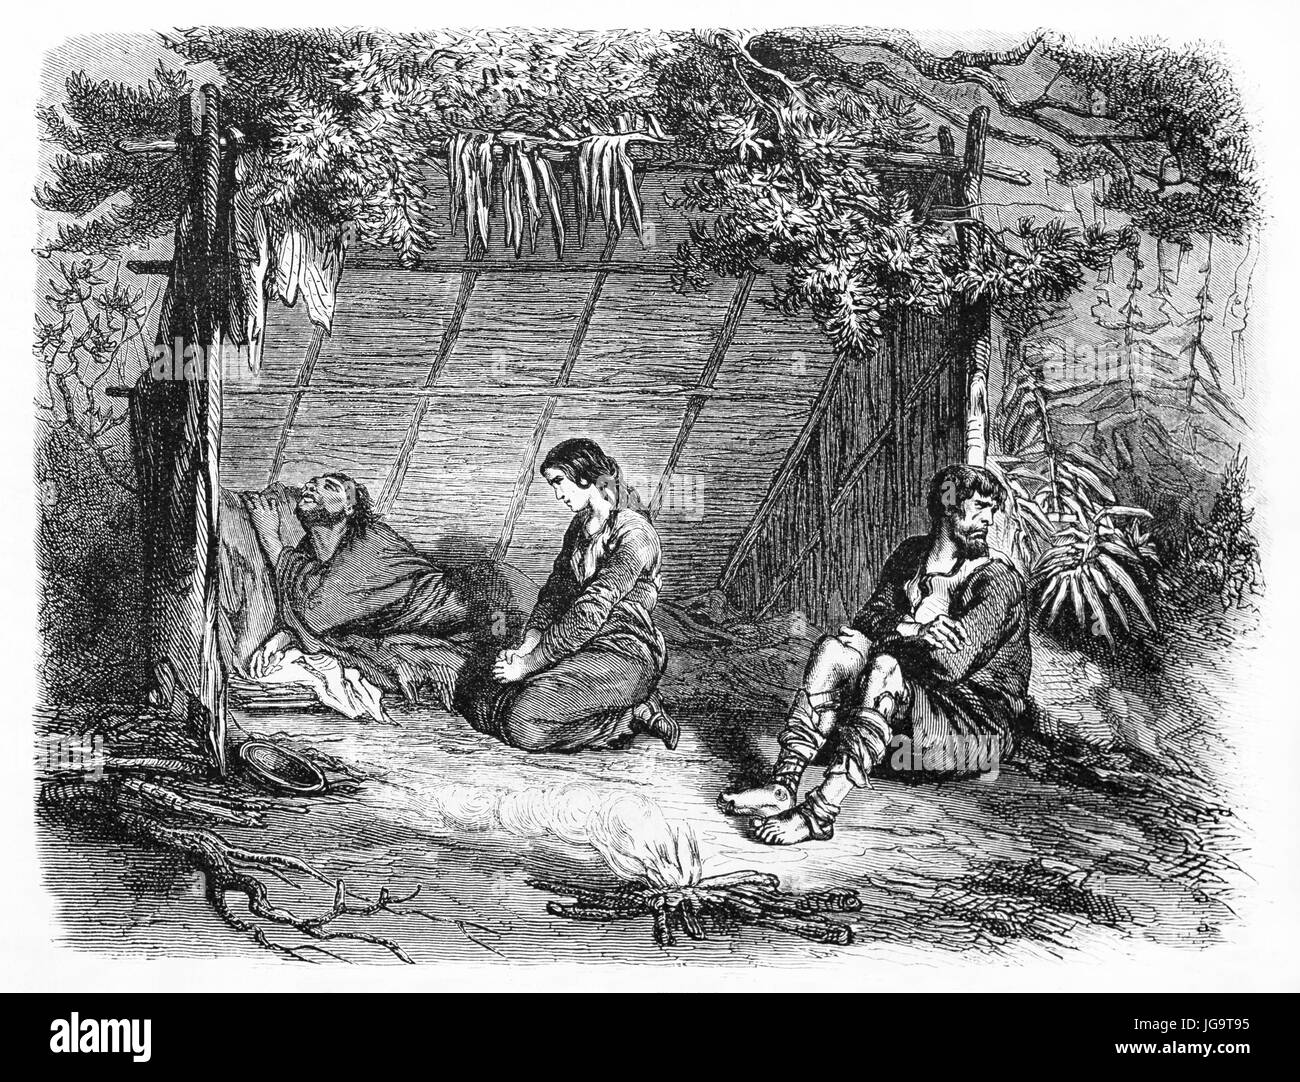 mujer pobre que ayuda al enfermo que sufre bajo un refugio en el bosque. Antiguo arte de estilo grabado en tonos grises de Castelli, publicado en le Tour du Monde 1861 Foto de stock